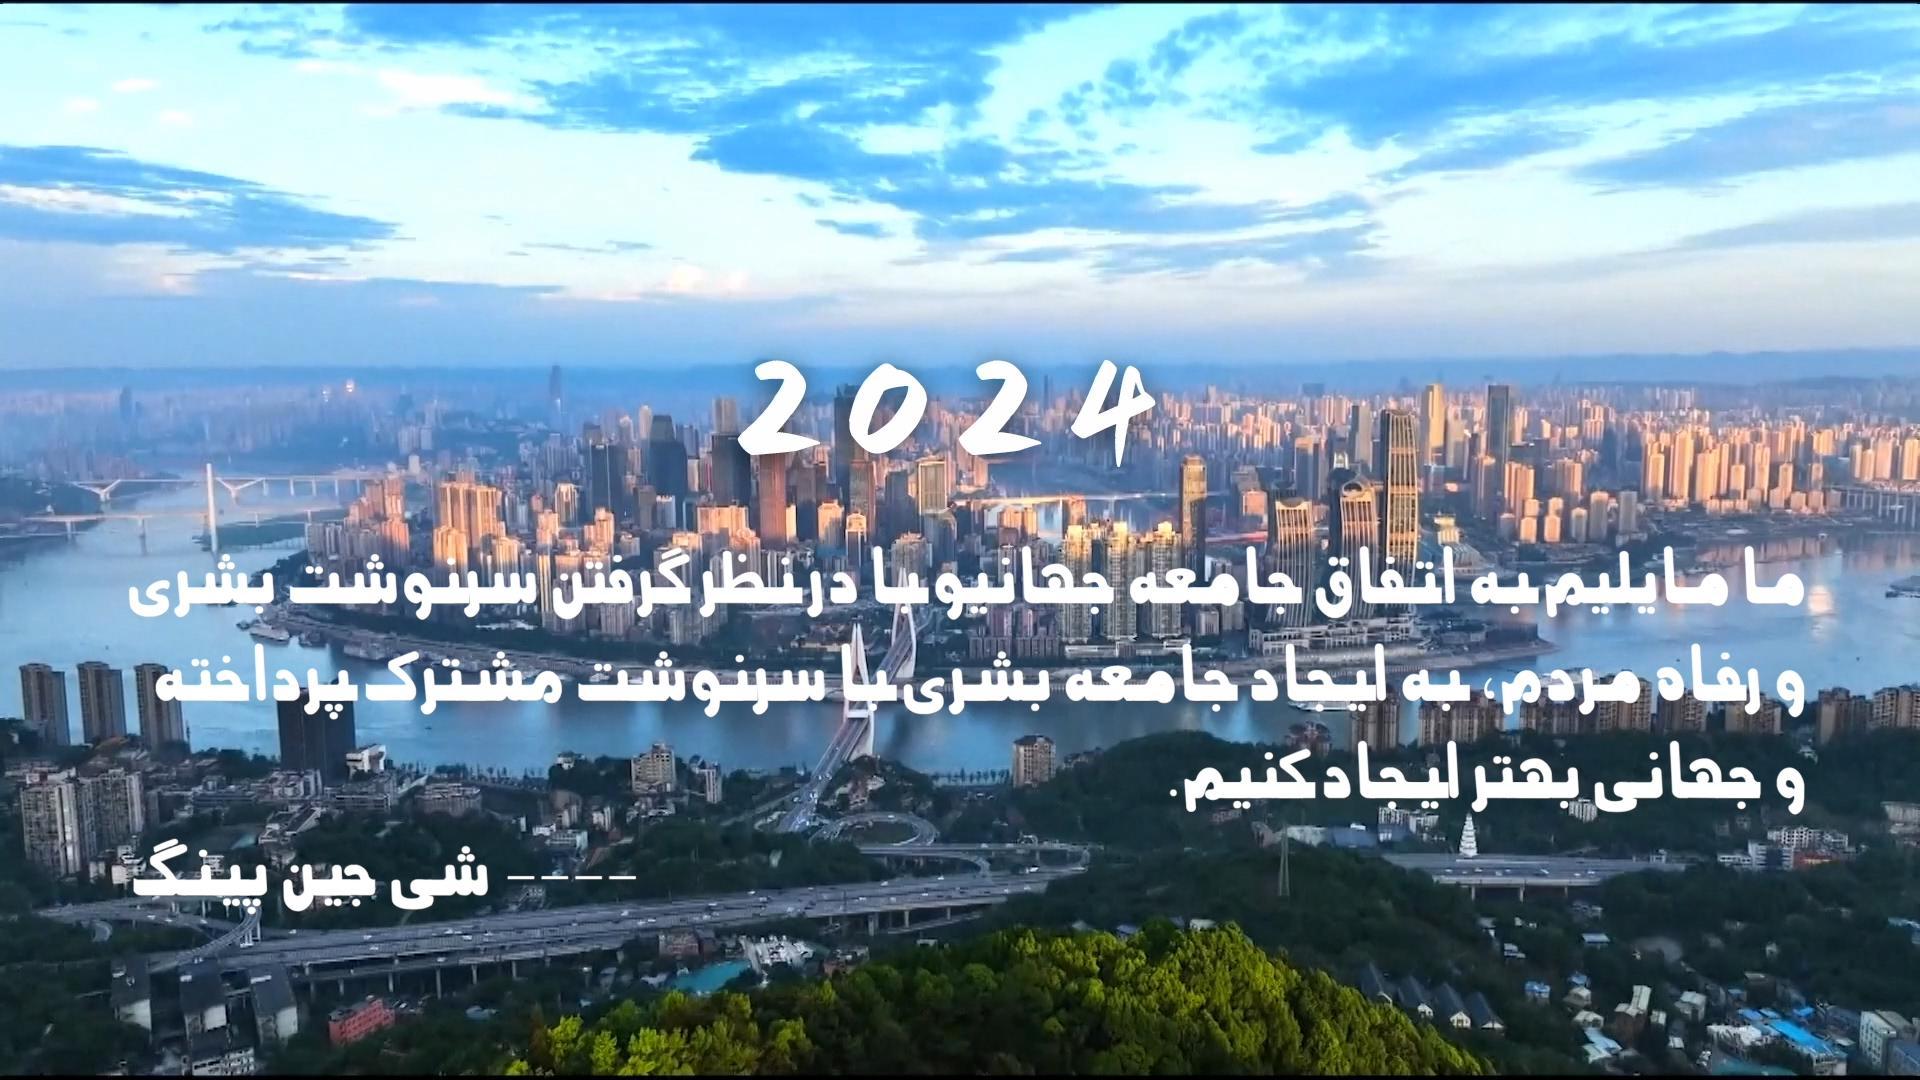 صلح، توسعه، همکاری، روابط برد-برد؛ نگاه پیشتازانه به سال۲۰۲۴ (ویدئو)ا